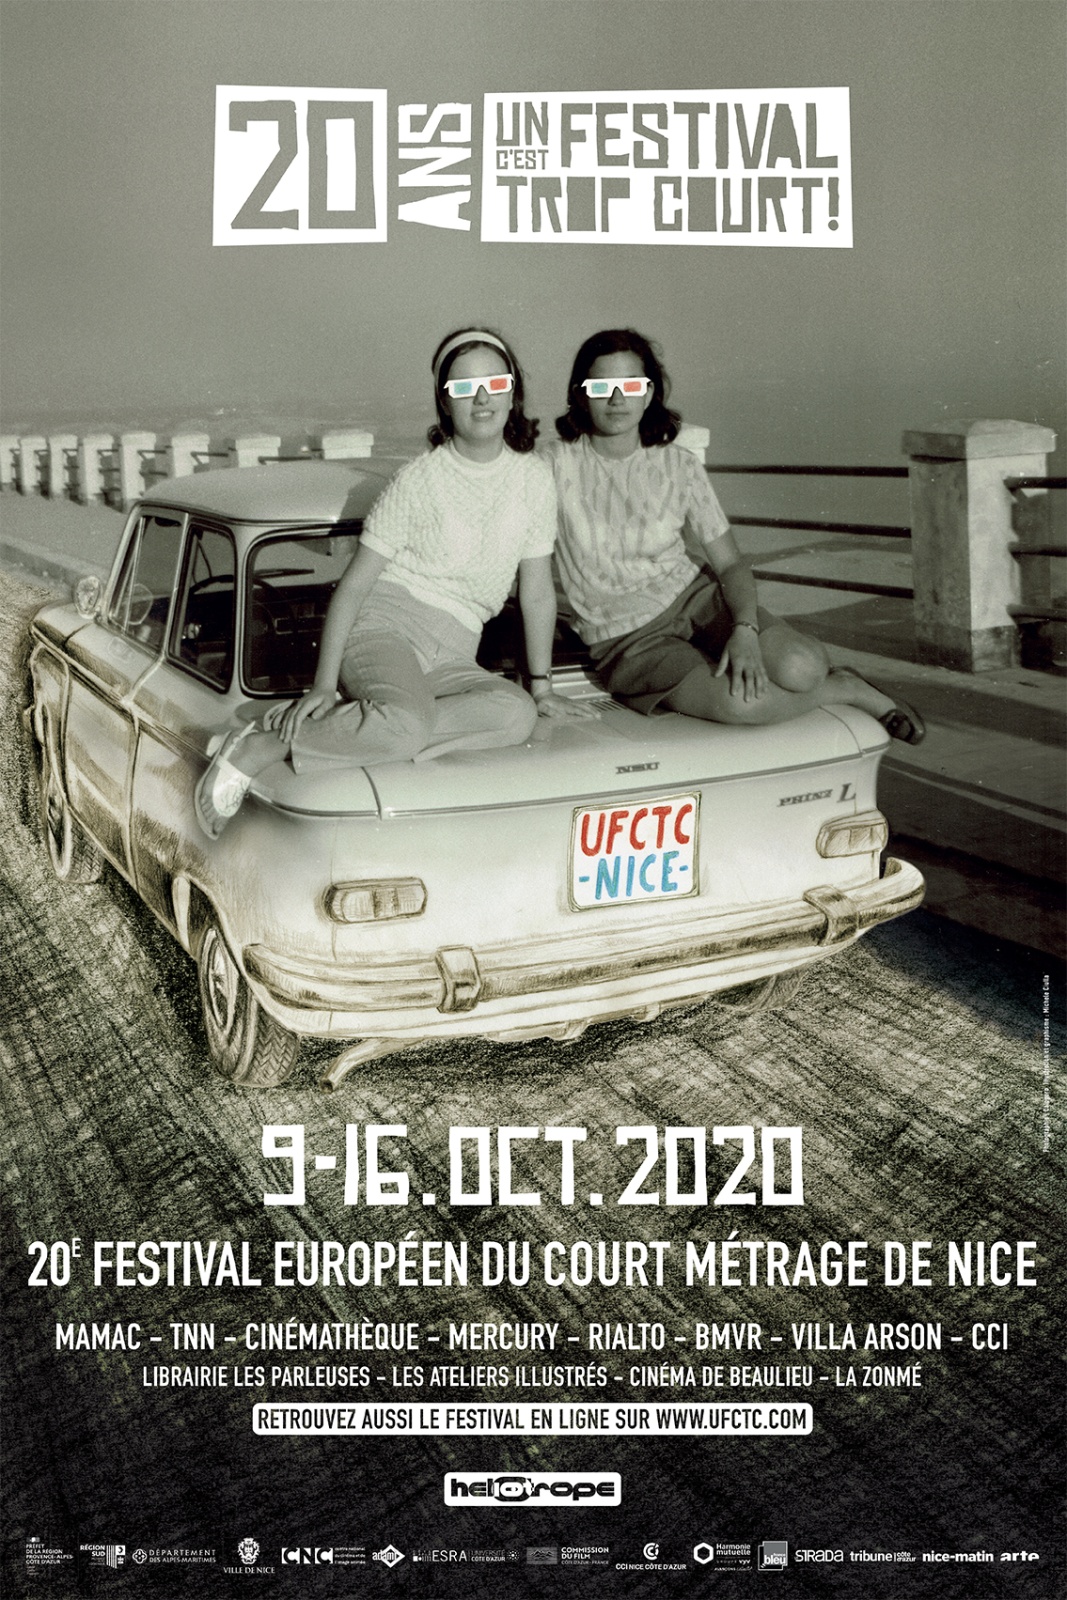 [center]Un festival c'est trop court. Nice Film Festival, 2020

https://www.nicefilmfestival.com/visuel-2020/?fbclid=IwAR0k4_a8kkrK_BU91y2mq3n_qrh5QKZISyL1wj_VSaN9yEi-l4qrYvucNgw

https://www.nicefilmfestival.com/en/